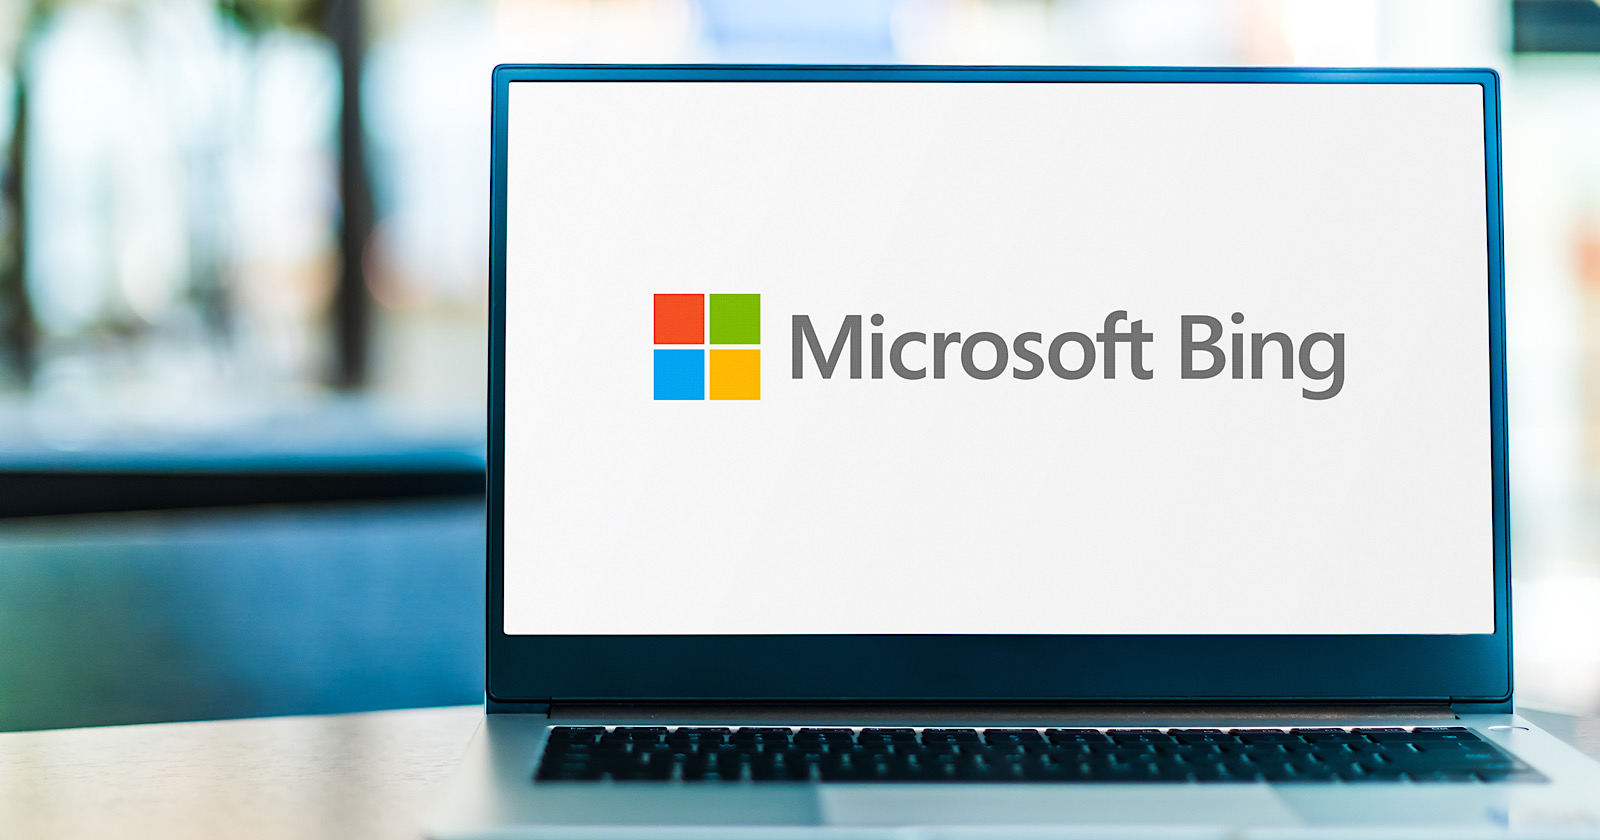 Microsoft оголосила про заплановану подію на 7 лютого, під час якої очікуються новини про інтеграцію ChatGPT з Bing